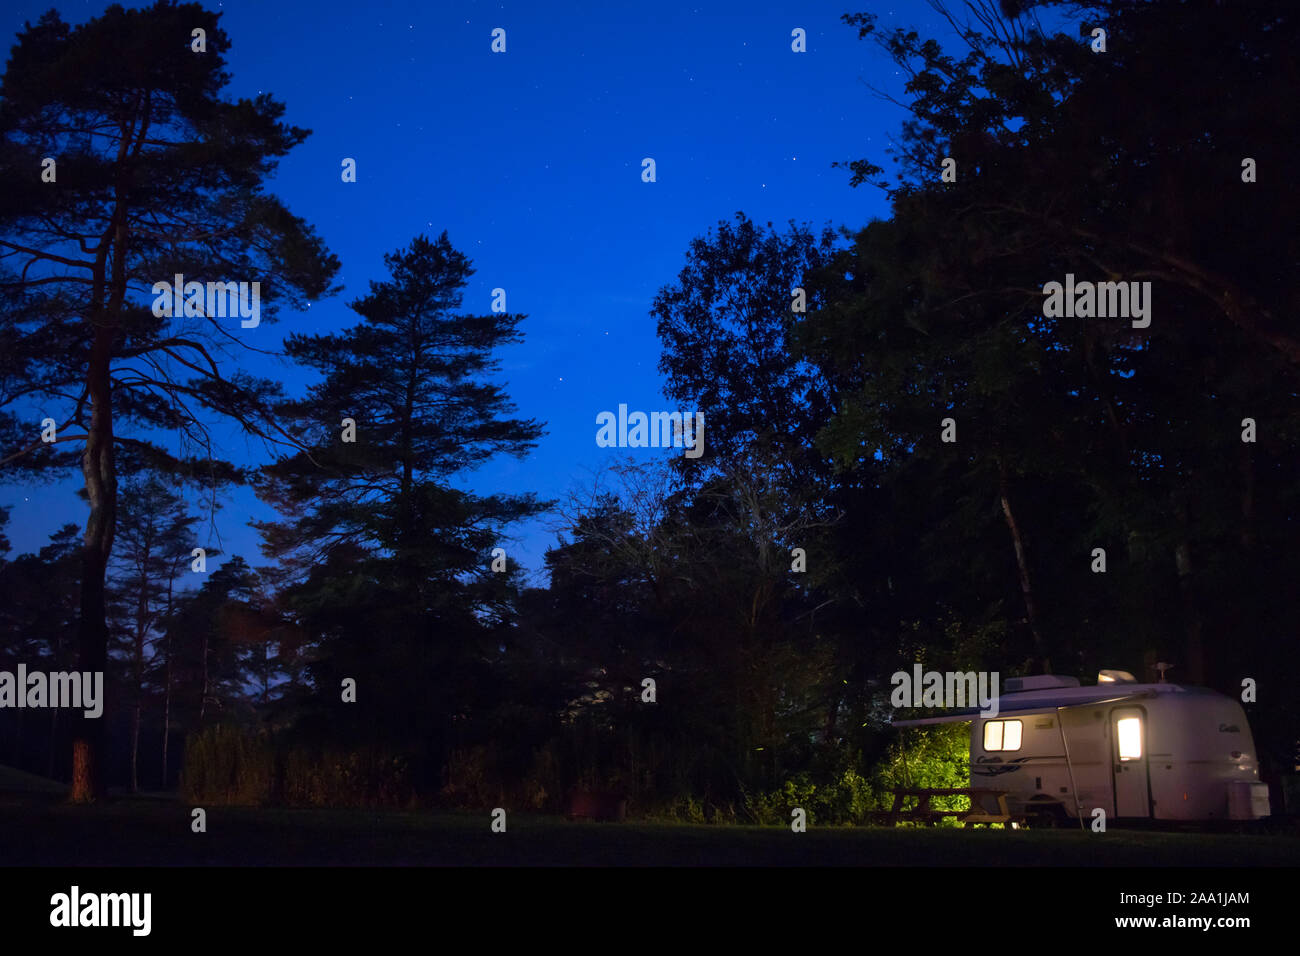 Casita leggero rimorchio di viaggio di notte sotto le stelle al Campground di Pinecreek, RVing, Camping RV siti : 27 luglio 2019 - Ithaca, NY, USA Foto Stock